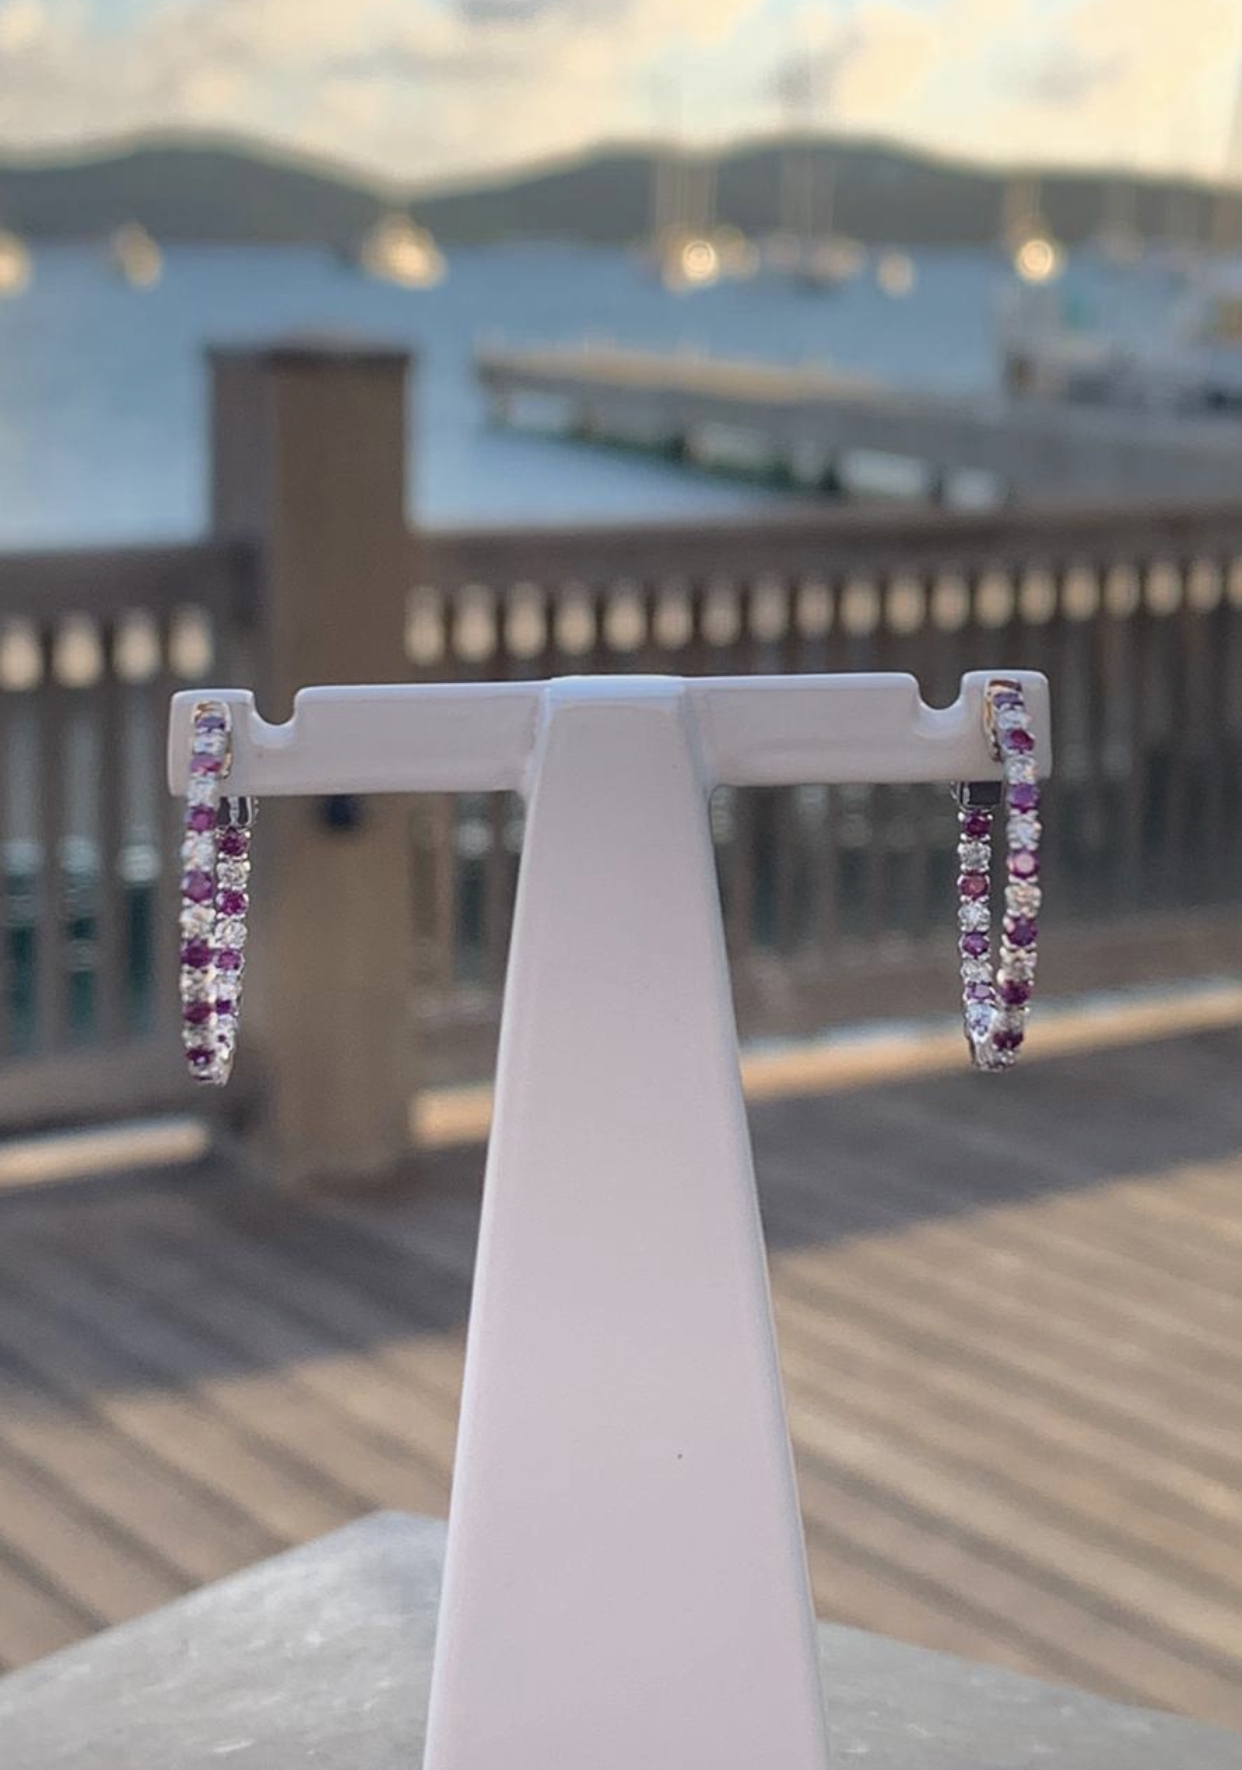 Purple Diamond Ladies Earrings